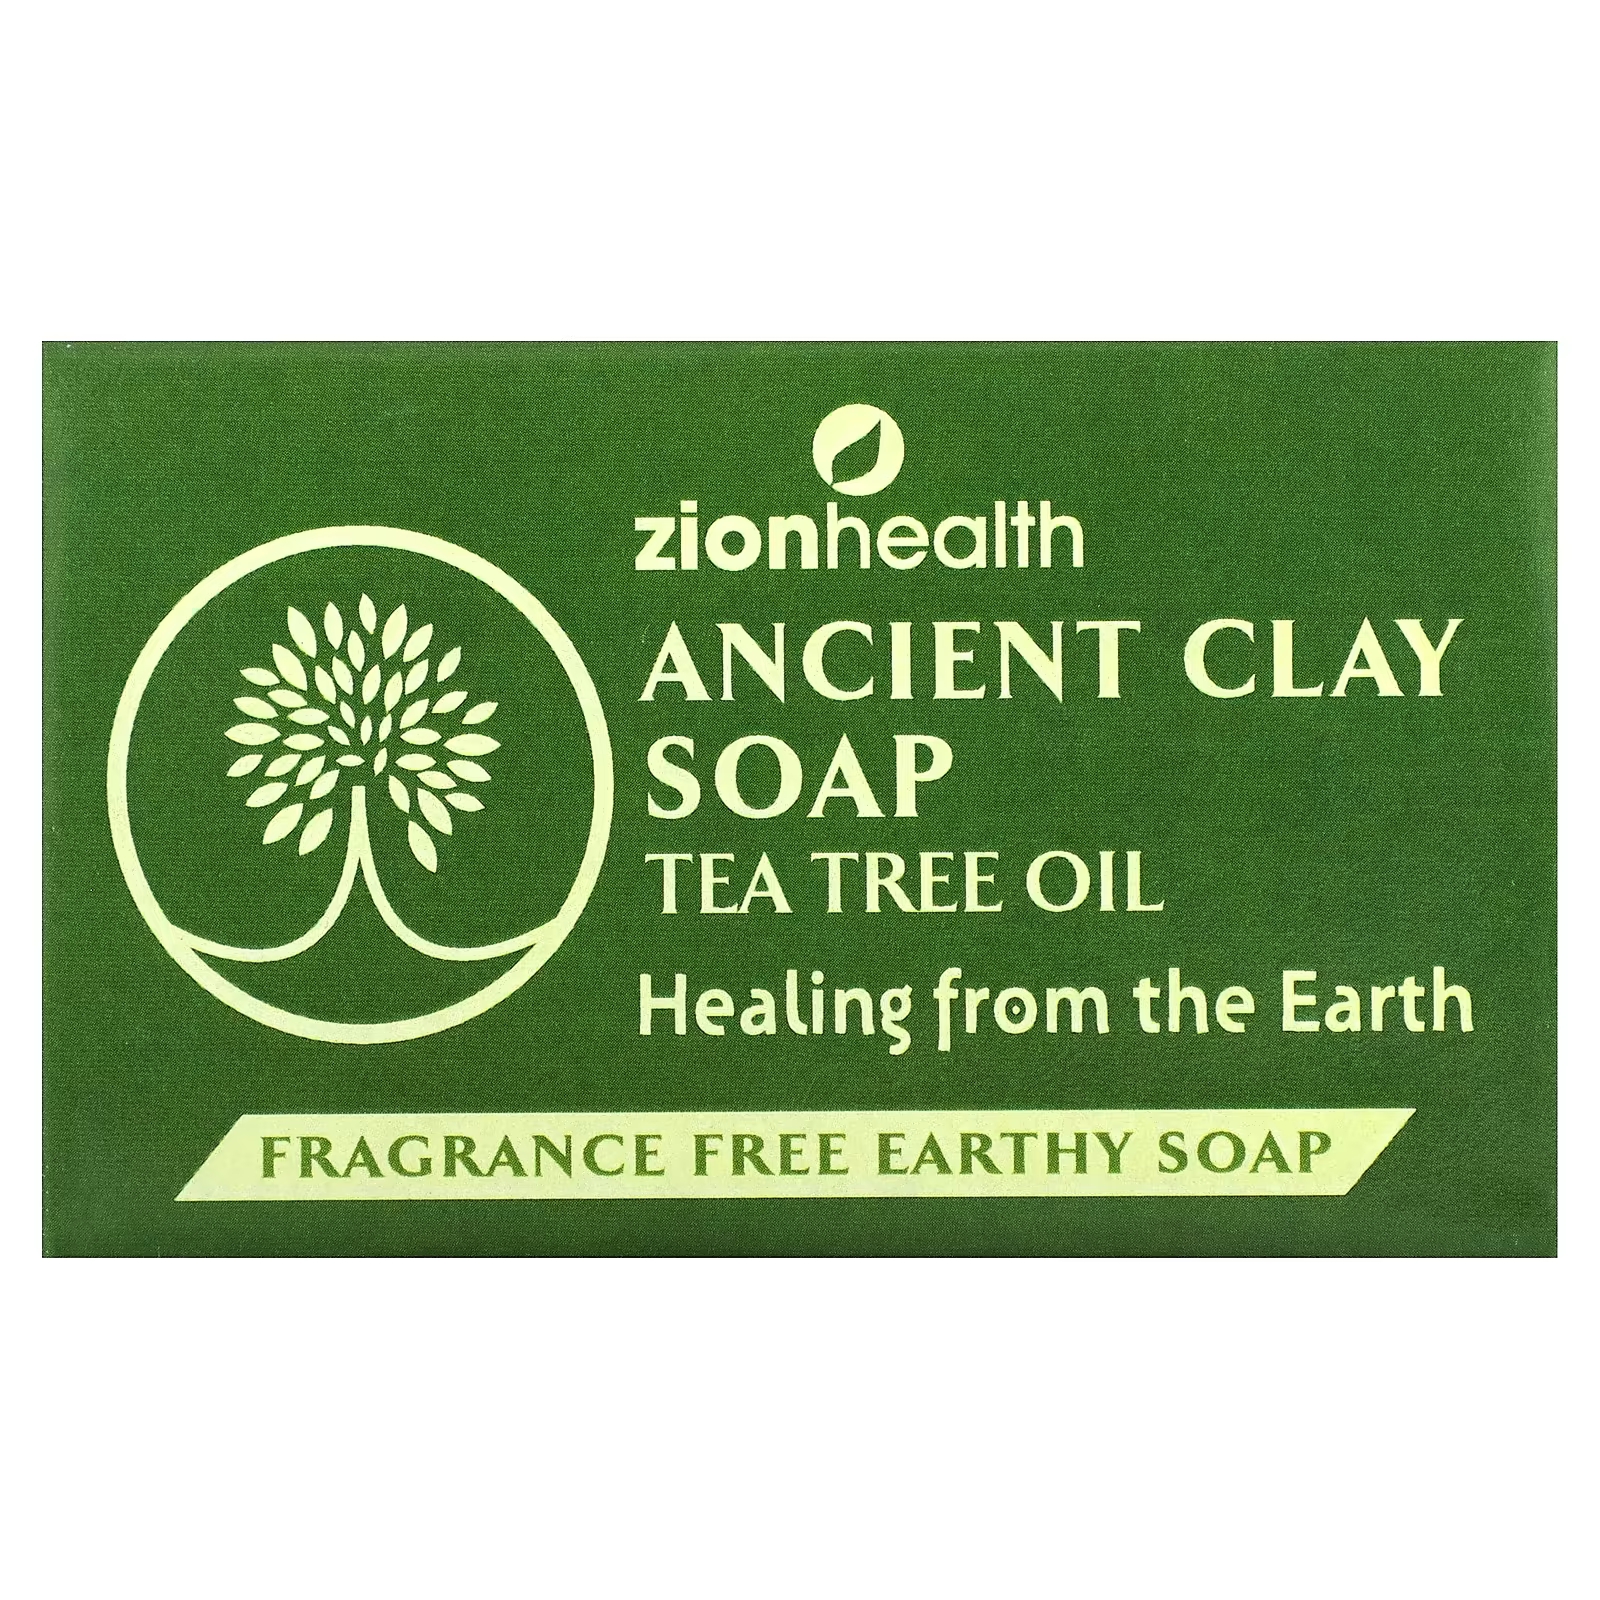 Мыло Zion Health Ancient Clay с маслом чайного дерева, 170 г zion health ancient clay soap активированный уголь 170 г 6 унций